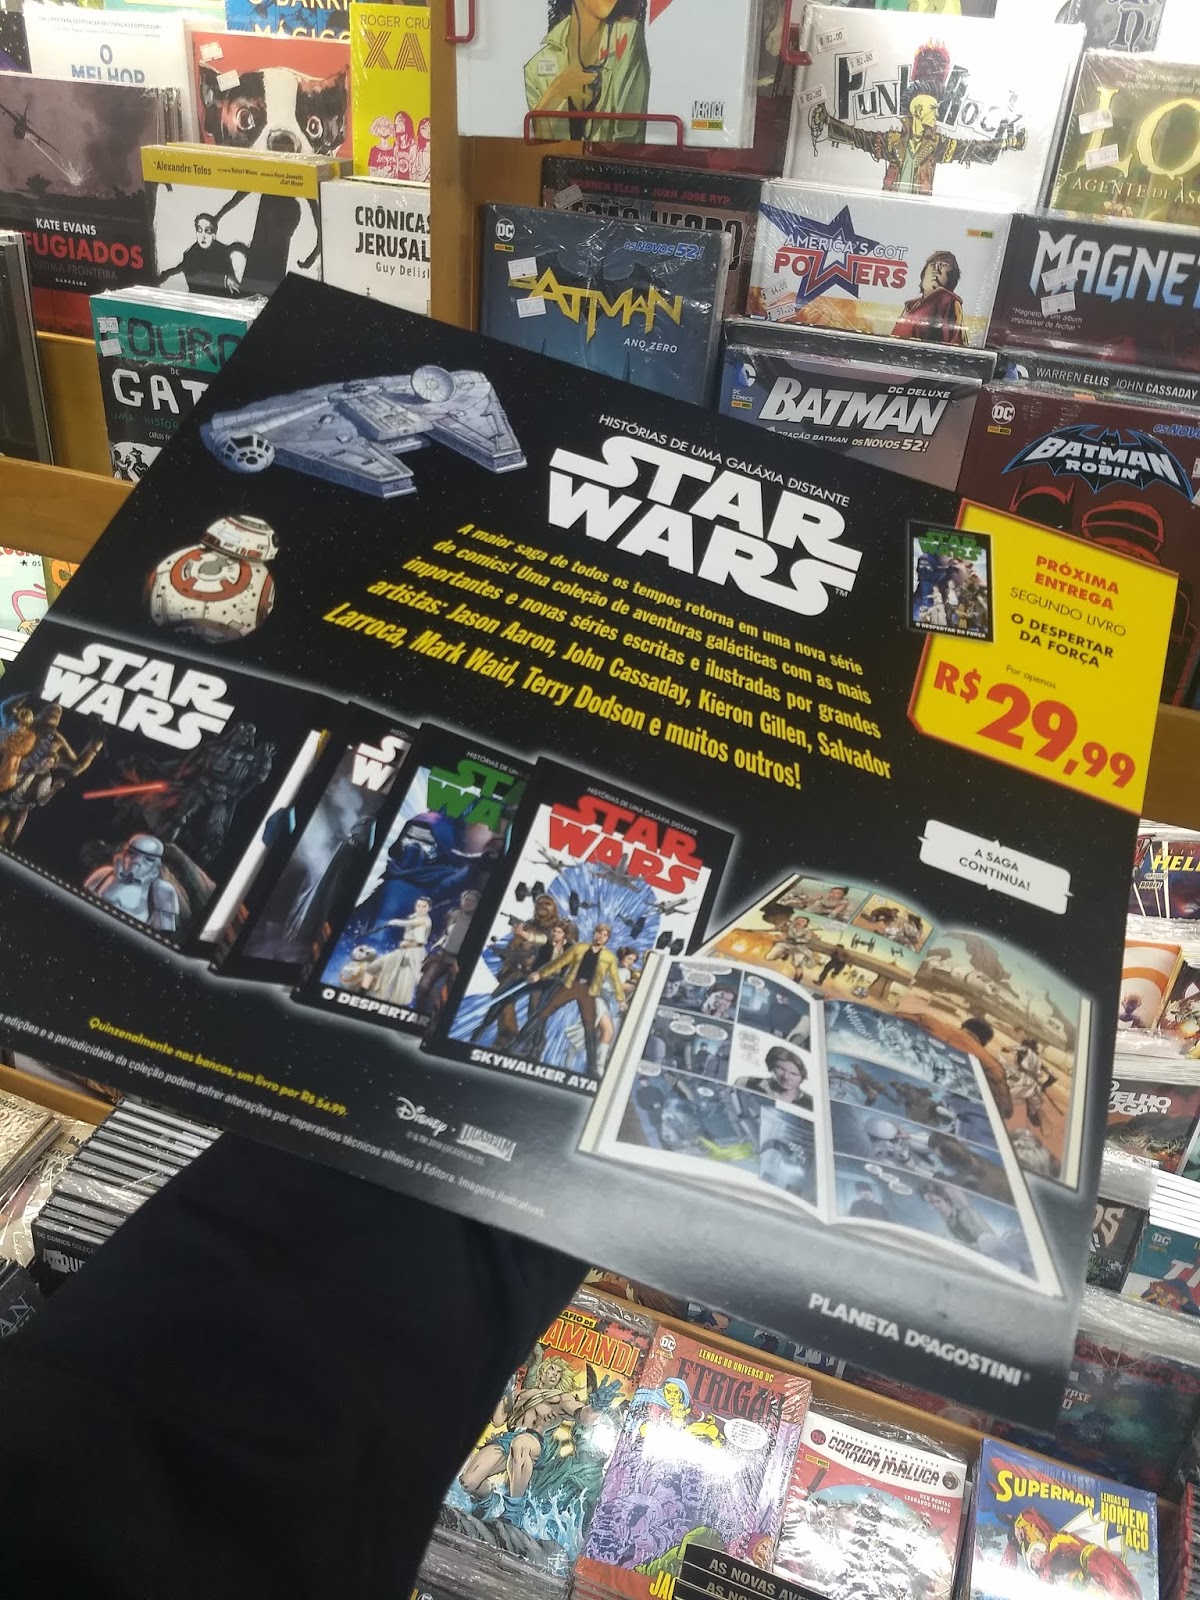 Sala de Justiça: Planeta DeAgostini traz coleção de Encadernados Star Wars!